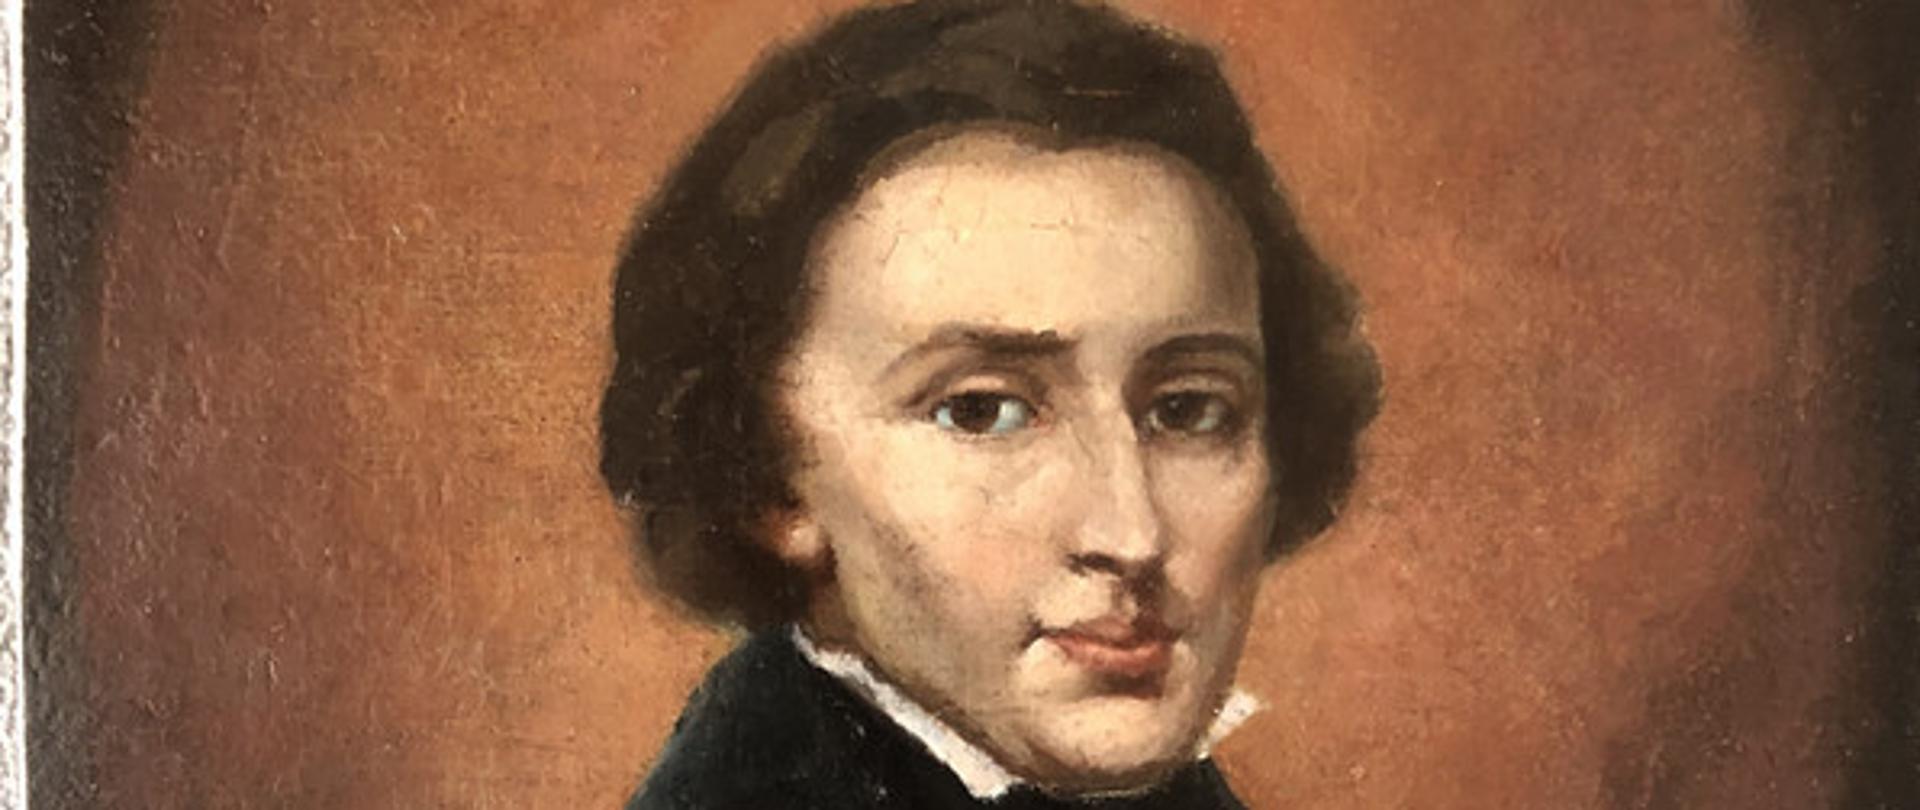 Portret młodego Fryderyka Chopina. Mężczyzna zwrócony jest w stronę widza. Ubrany w ciemny surdut z białą koszulą oraz ciemną chustką, wiązaną z przodu na ozdobny węzeł lub kokardę.